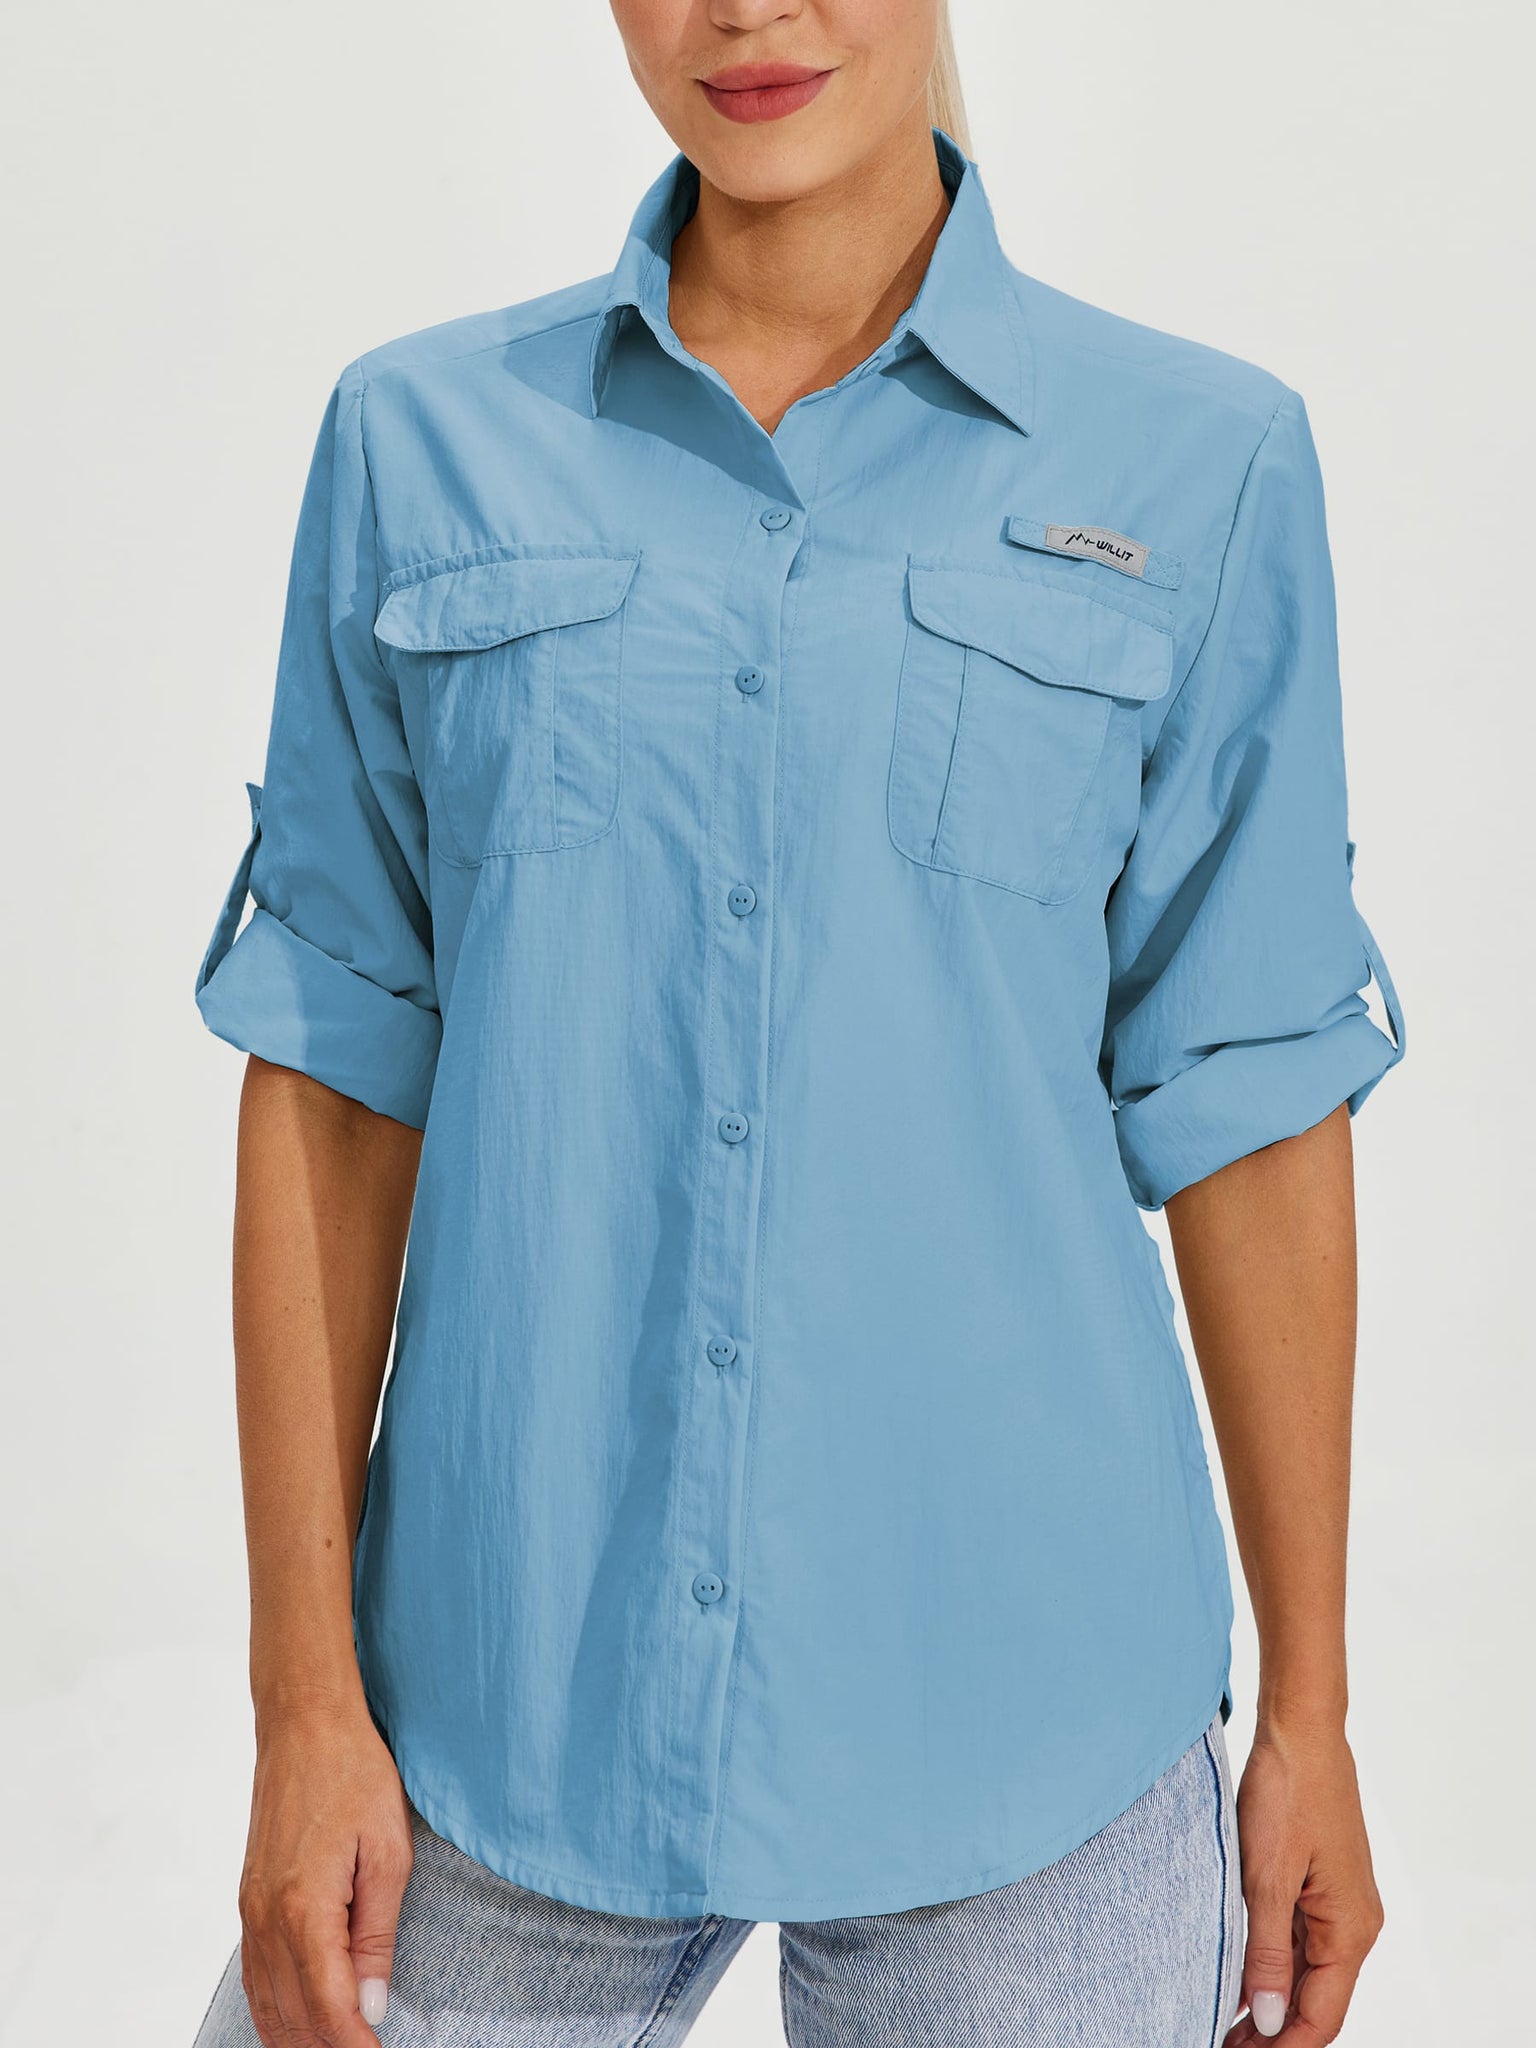 Women's Long Sleeve Fishing Shirt_Blue_model3